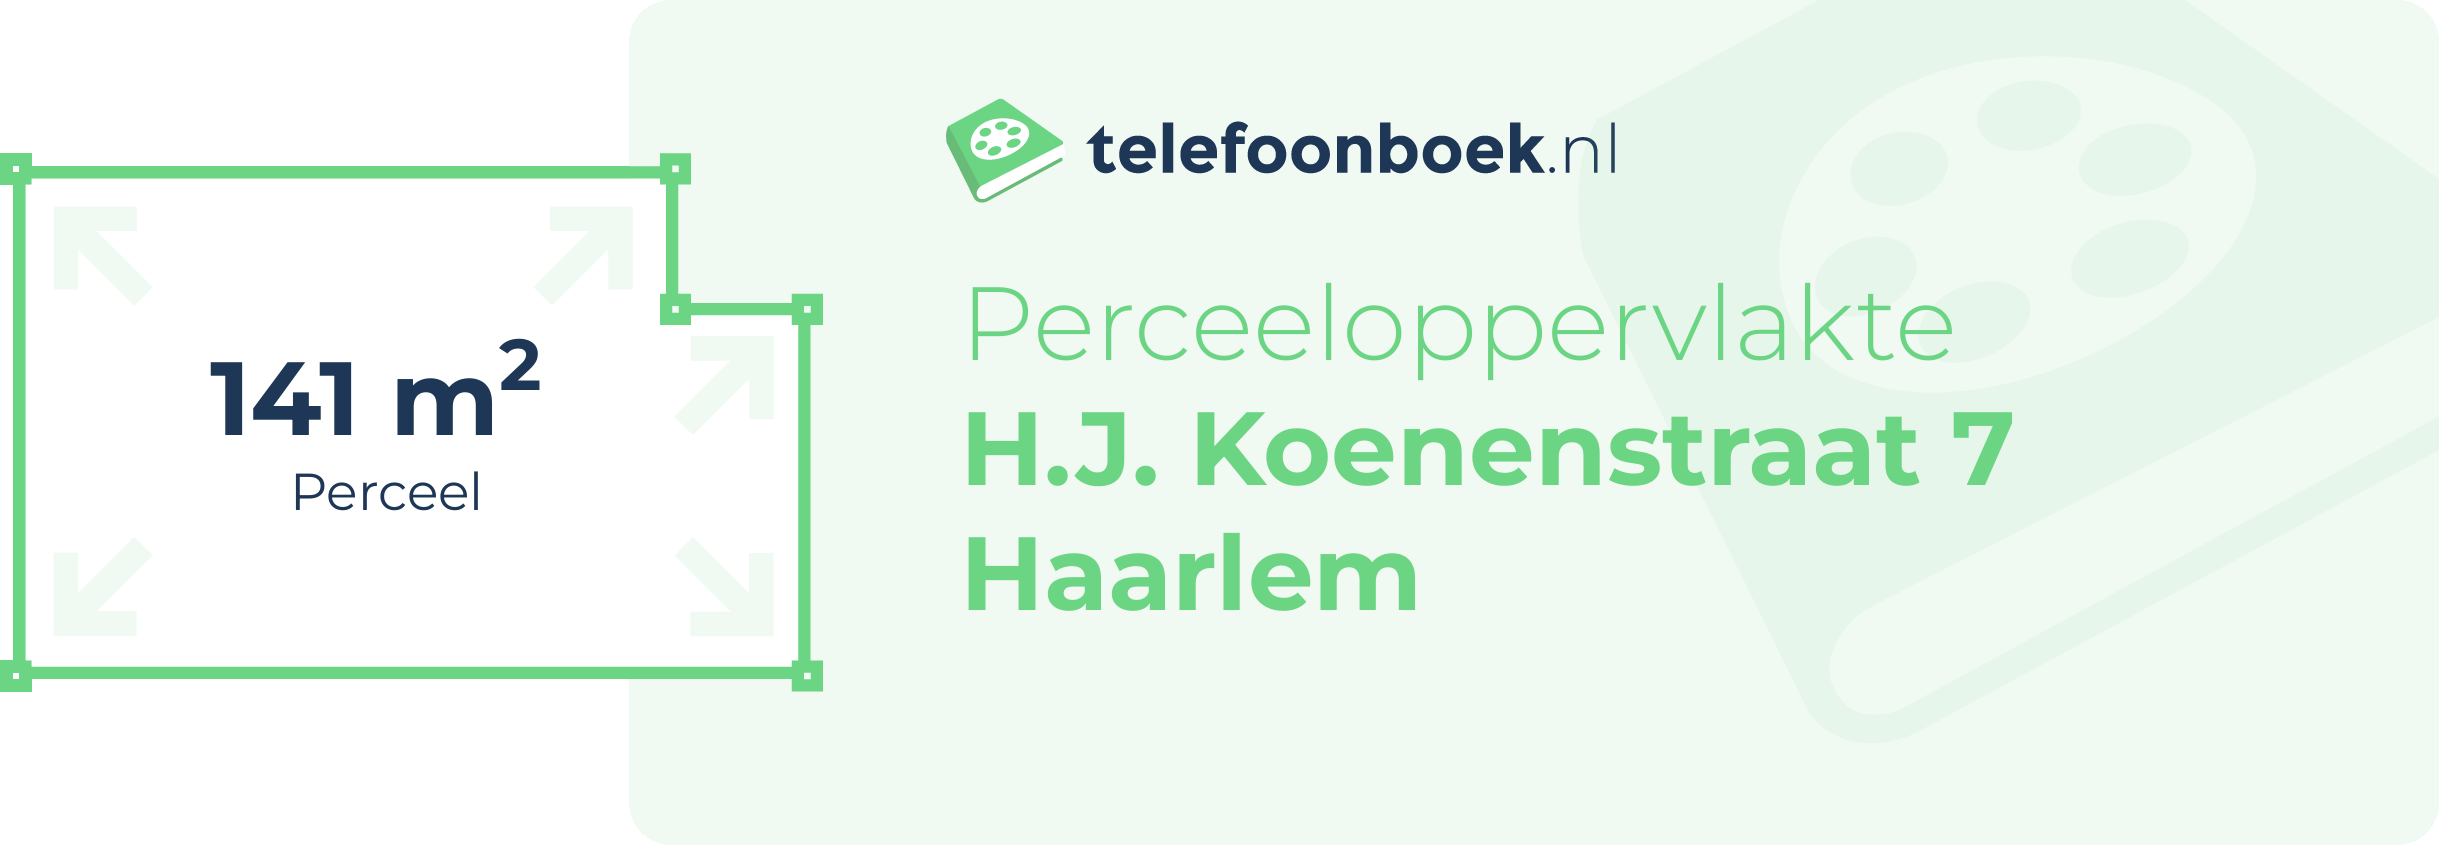 Perceeloppervlakte H.J. Koenenstraat 7 Haarlem